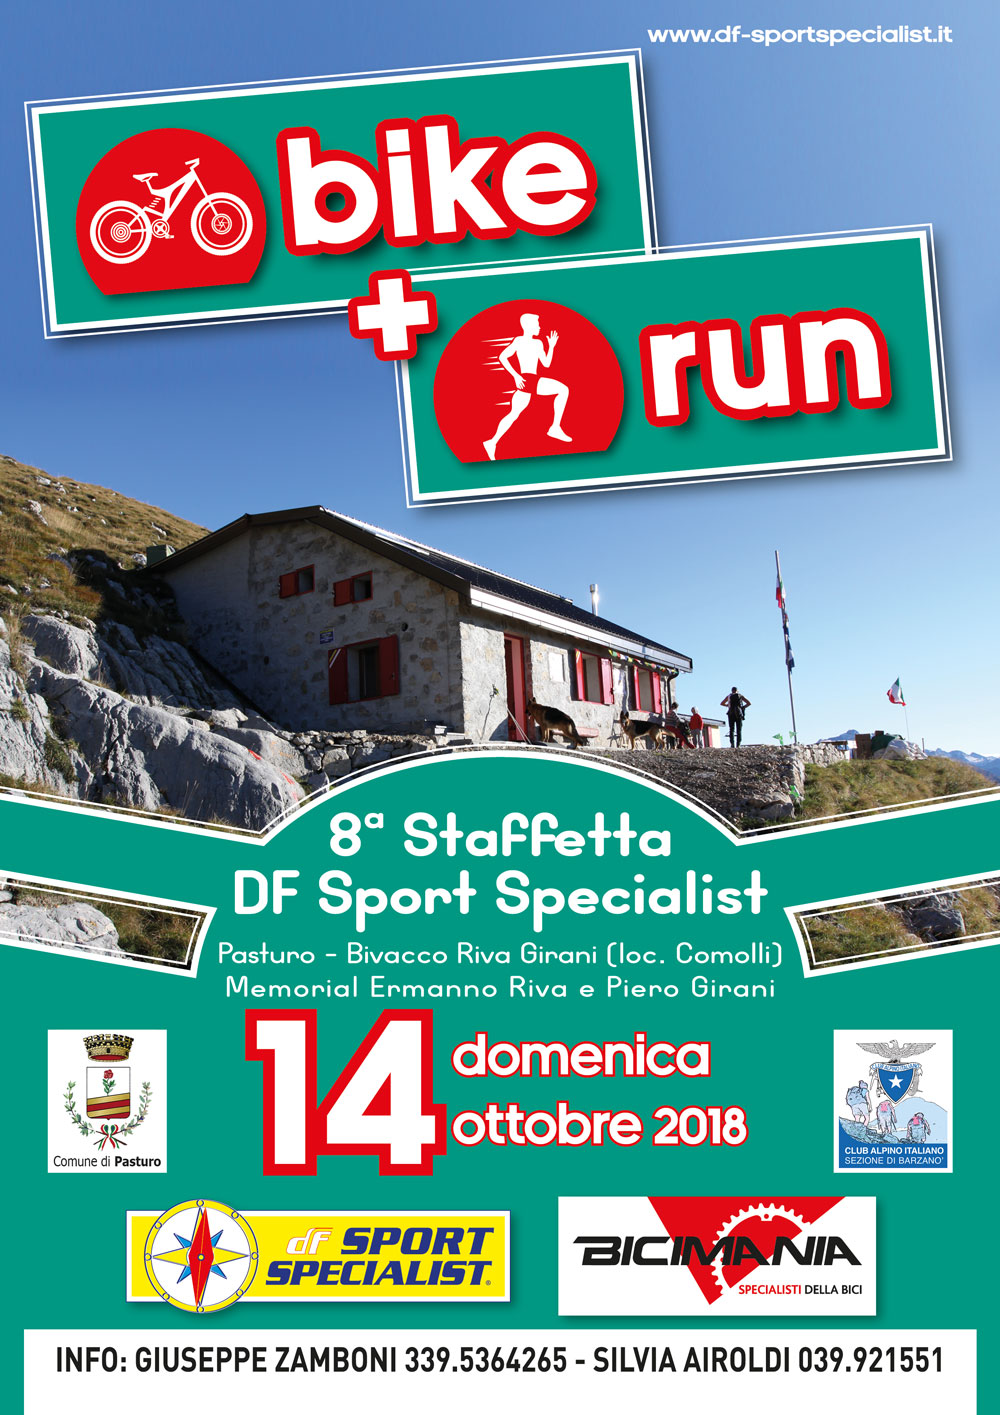 Staffetta DF Sport Specialist - Memorial Riva-Girani